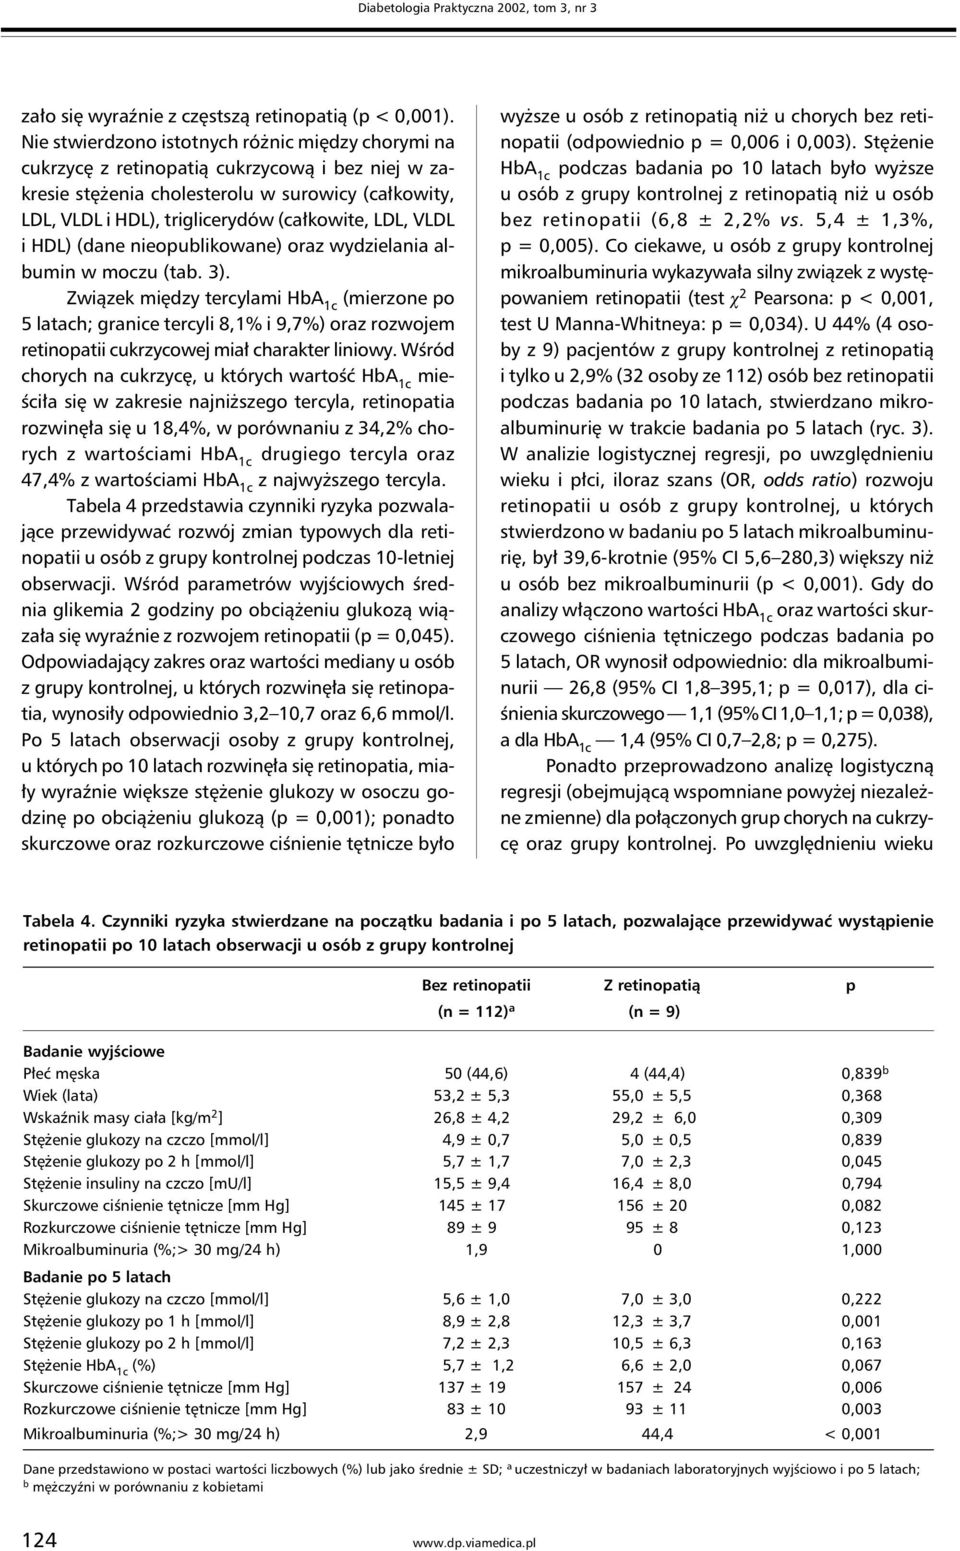 LDL, VLDL i HDL) (dane nieopublikowane) oraz wydzielania albumin w moczu (tab. 3).